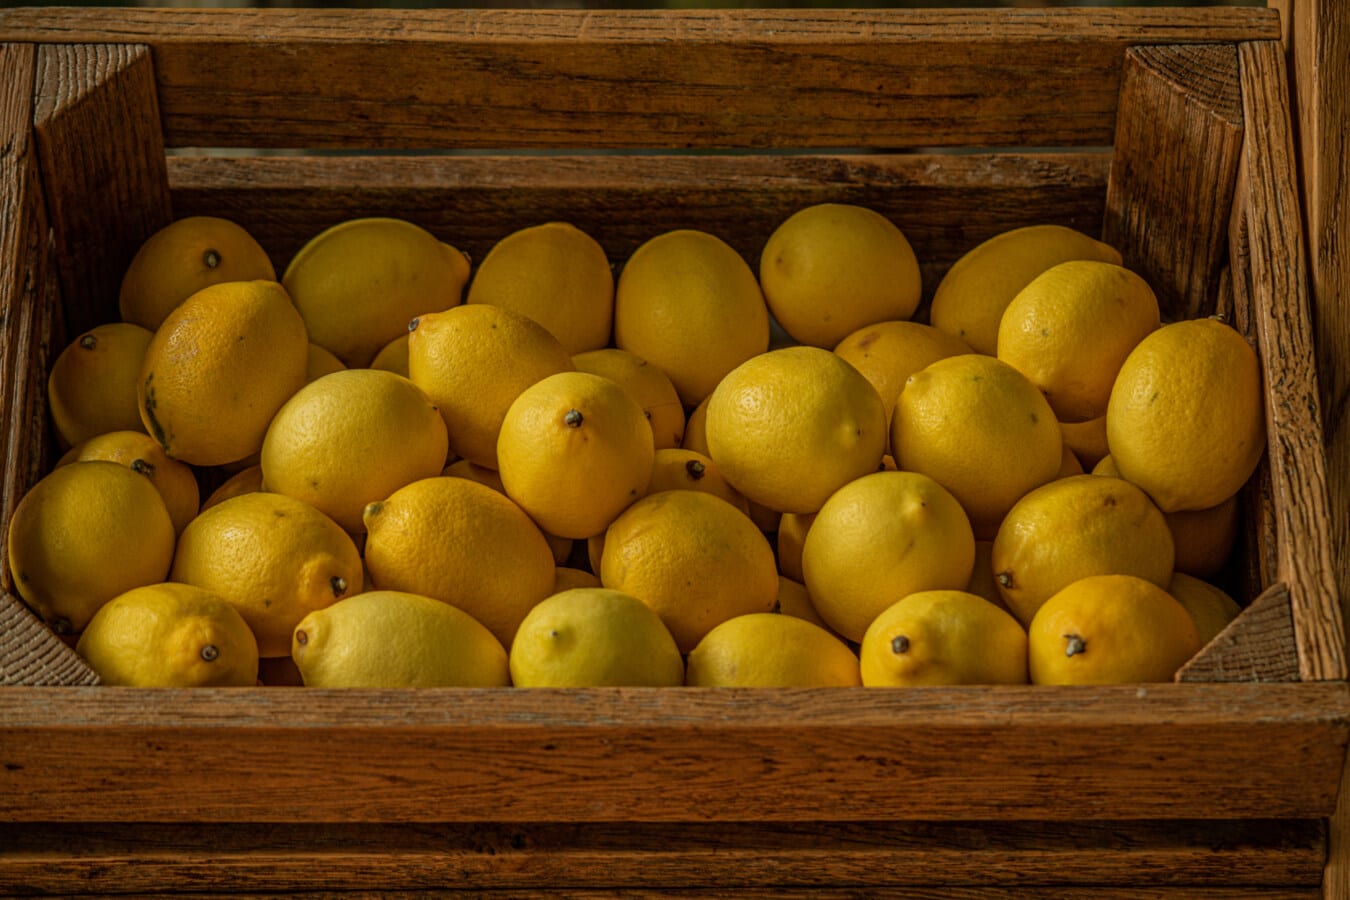 лимон, цитрусовые, спелые плоды, деревянные, коробка, органические, сельское хозяйство, питание, продукты, фрукты